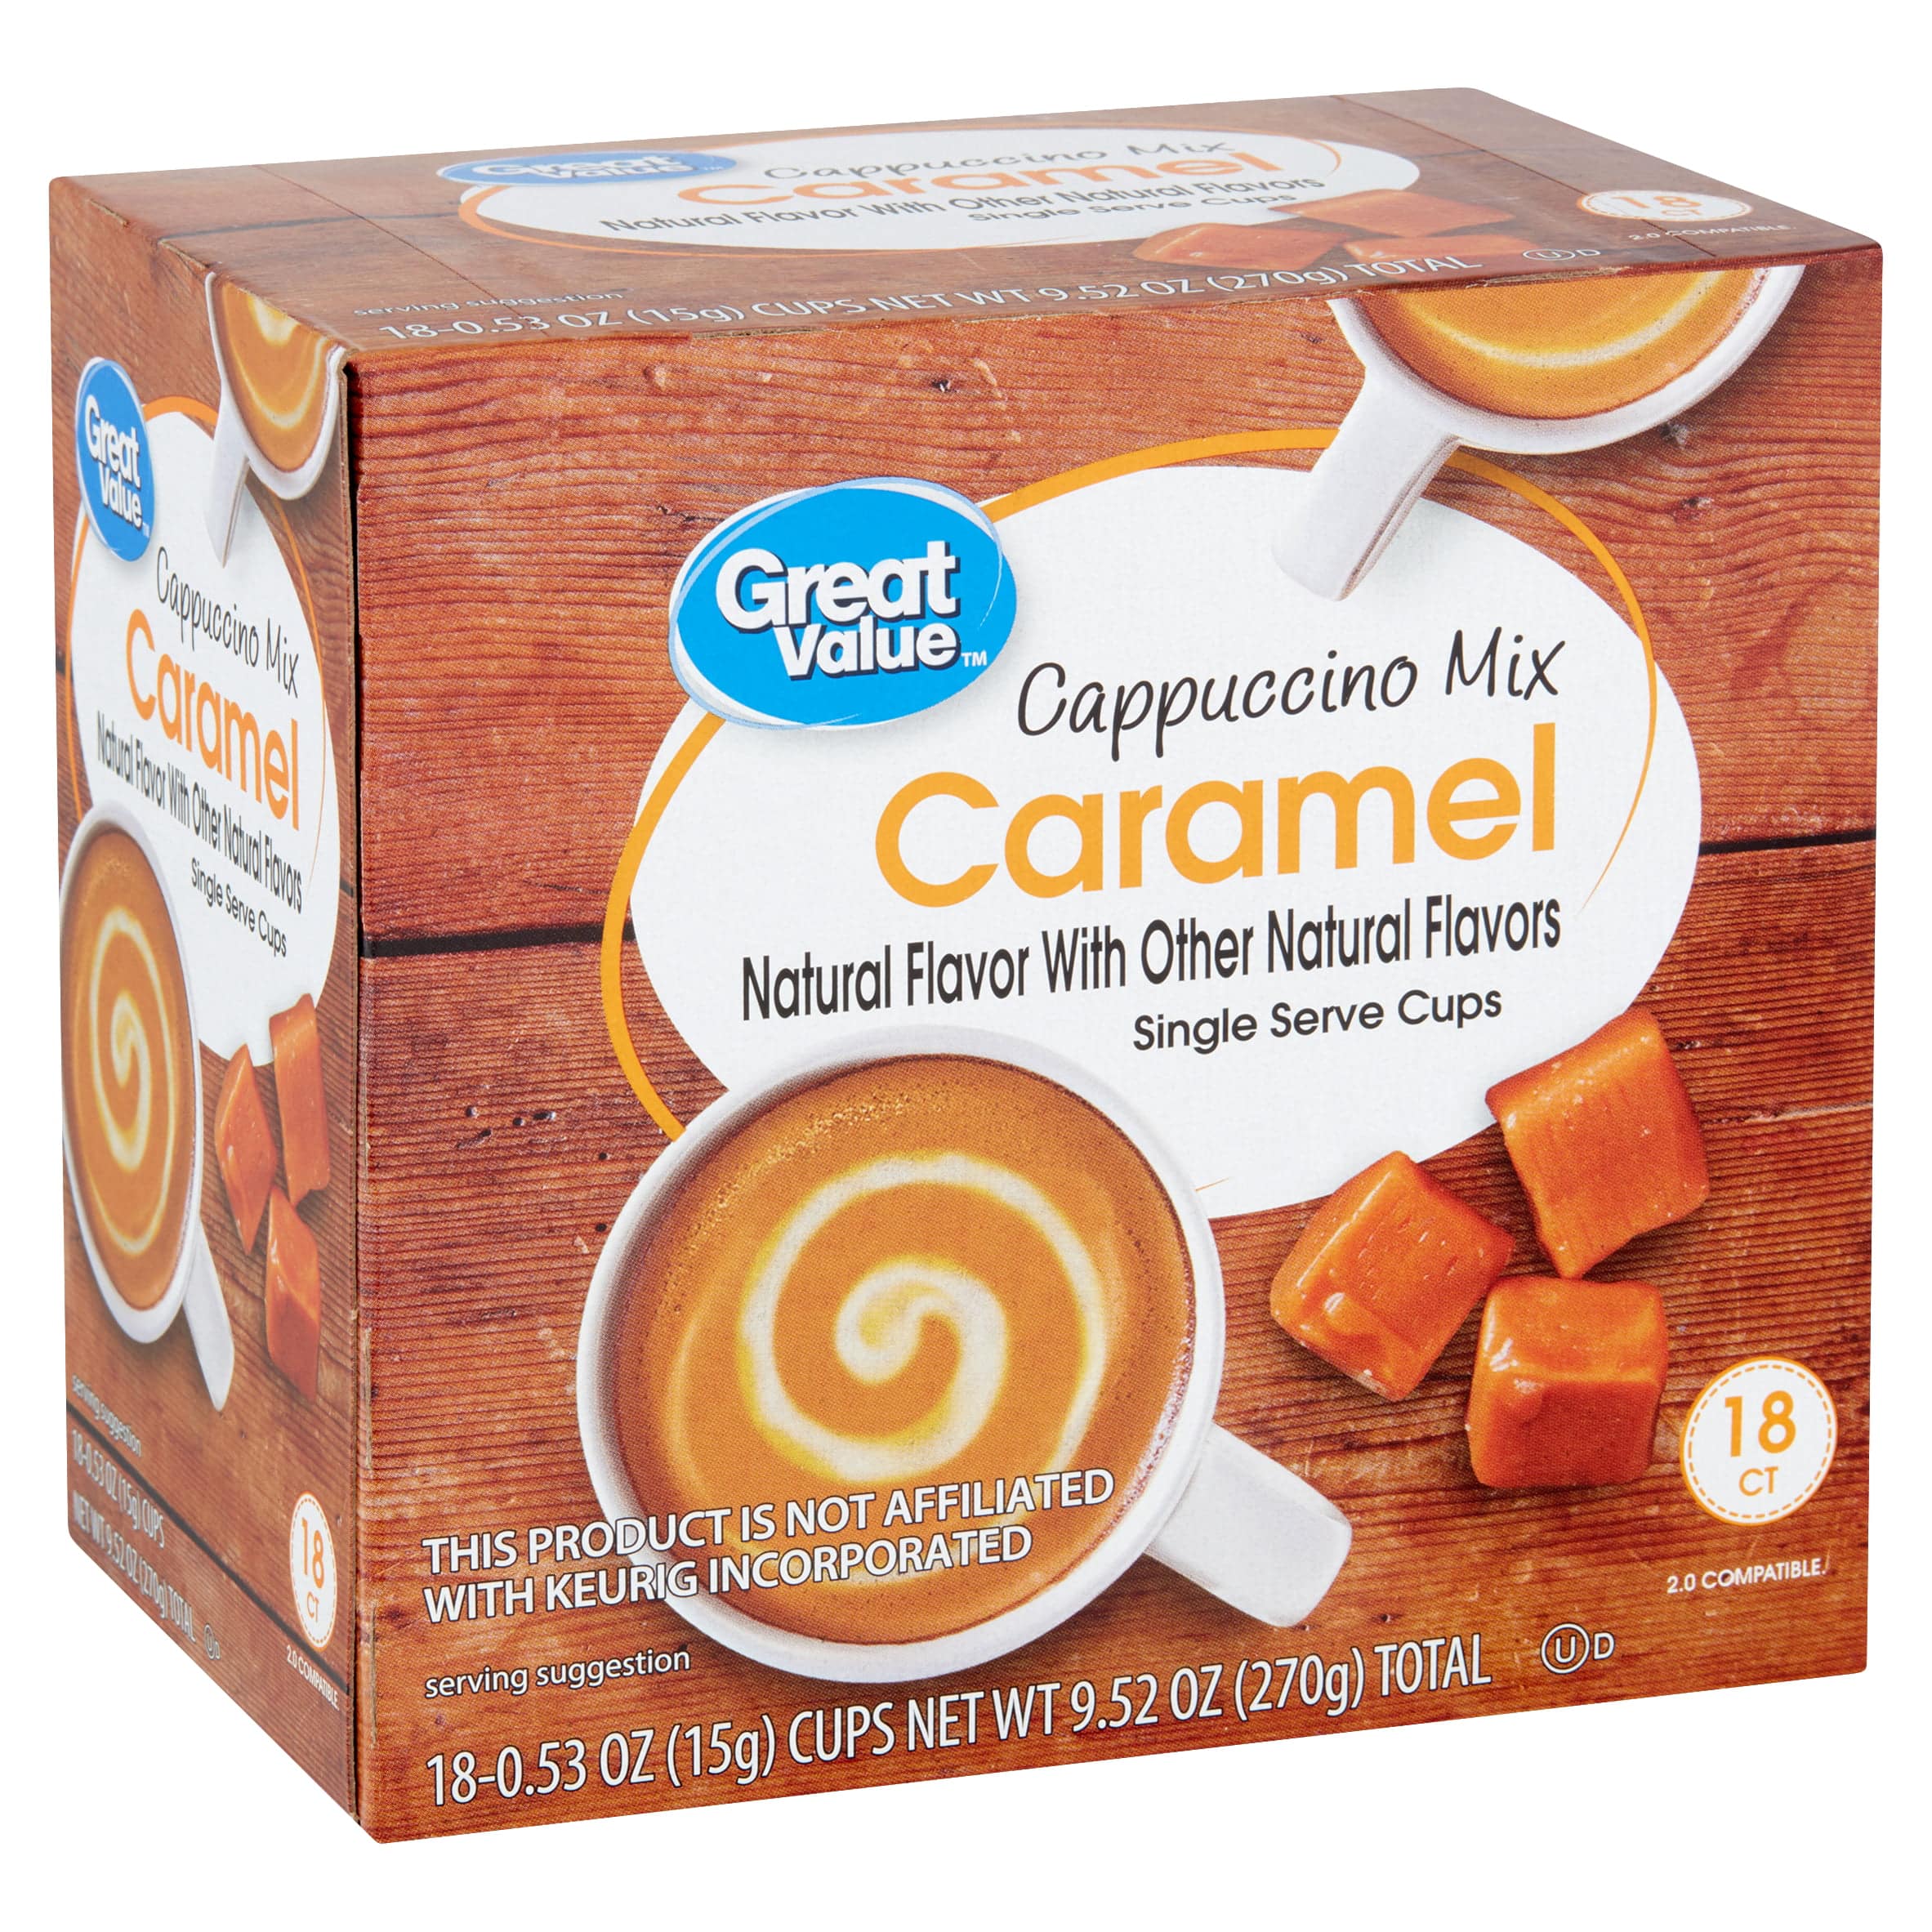 Great Value Caramel Cappuccino Mix, 0.53 oz, 18 count